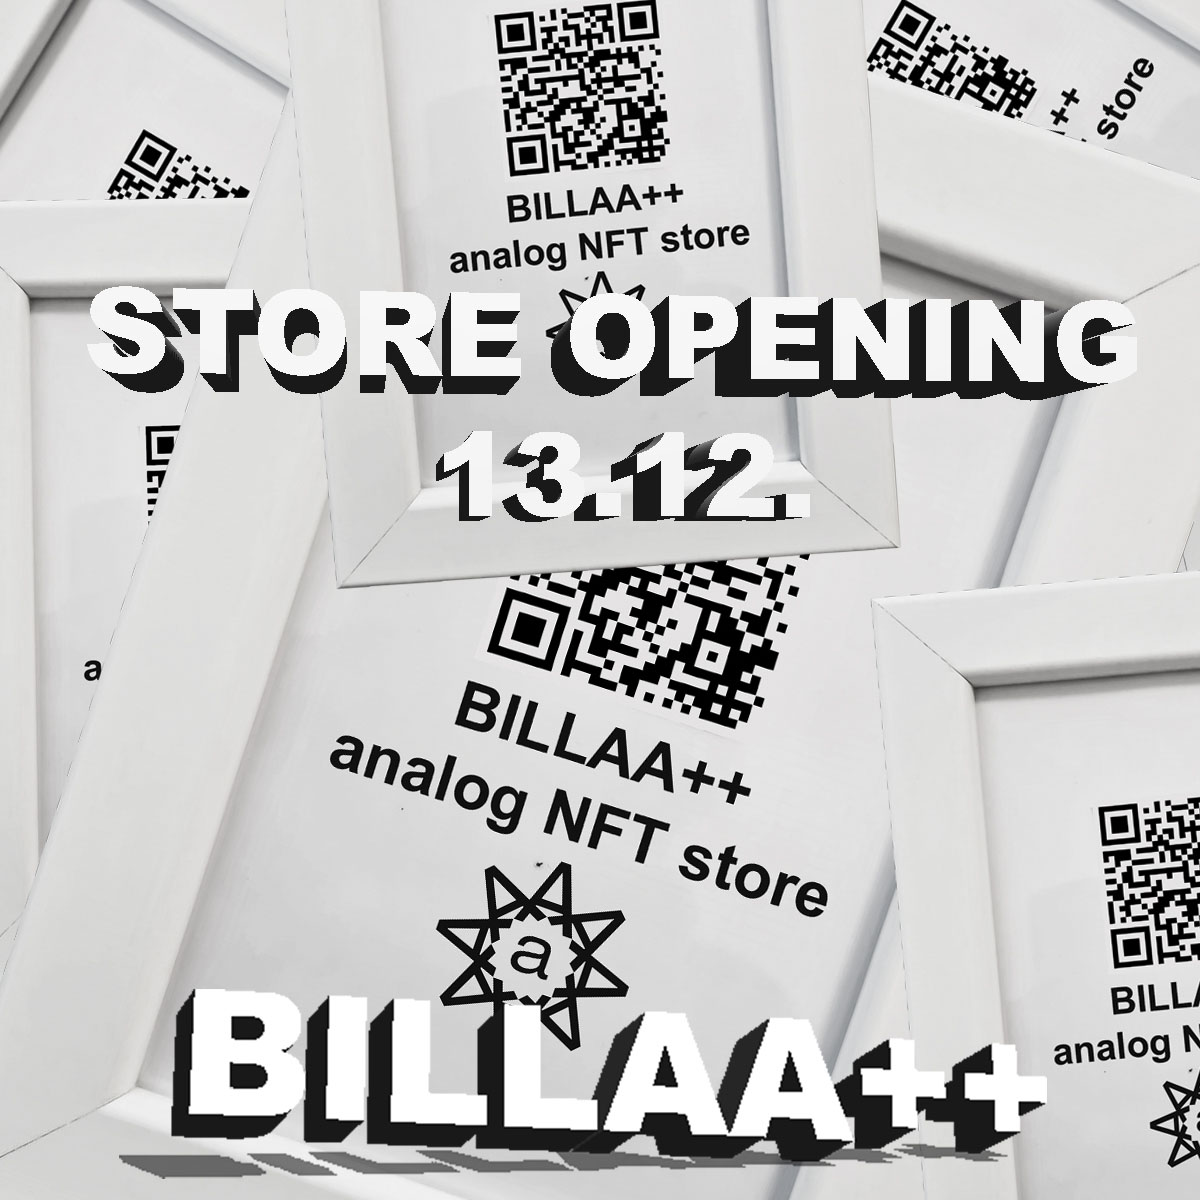 BILLAA++  Analog NFT Store wien